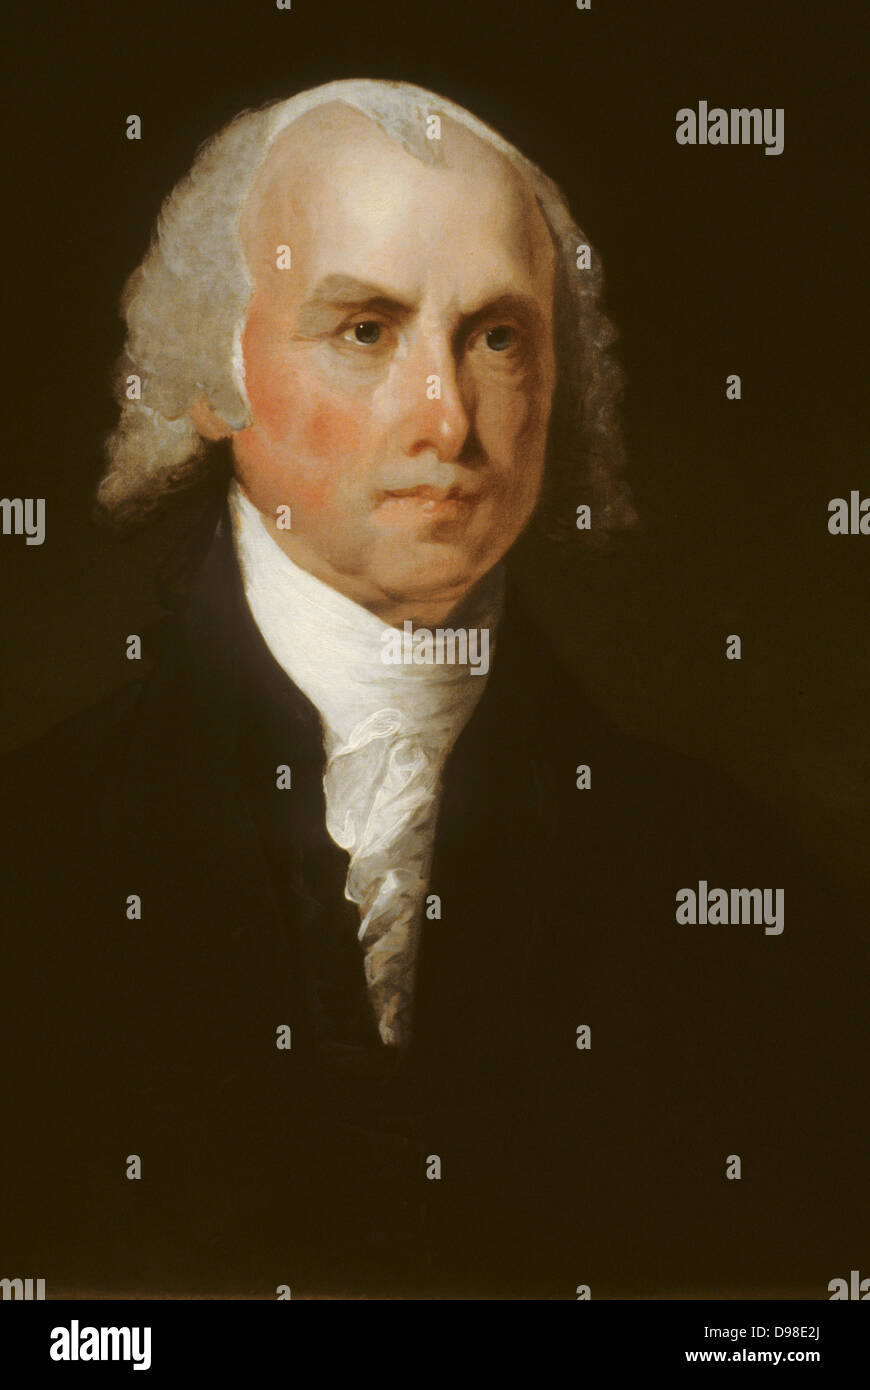 James Monroe (1758-1831) fünfter Präsident der Vereinigten Staaten (1817-1825). Monroe Doktrin war während seiner Verwaltung eingeführt. Porträt. Stockfoto